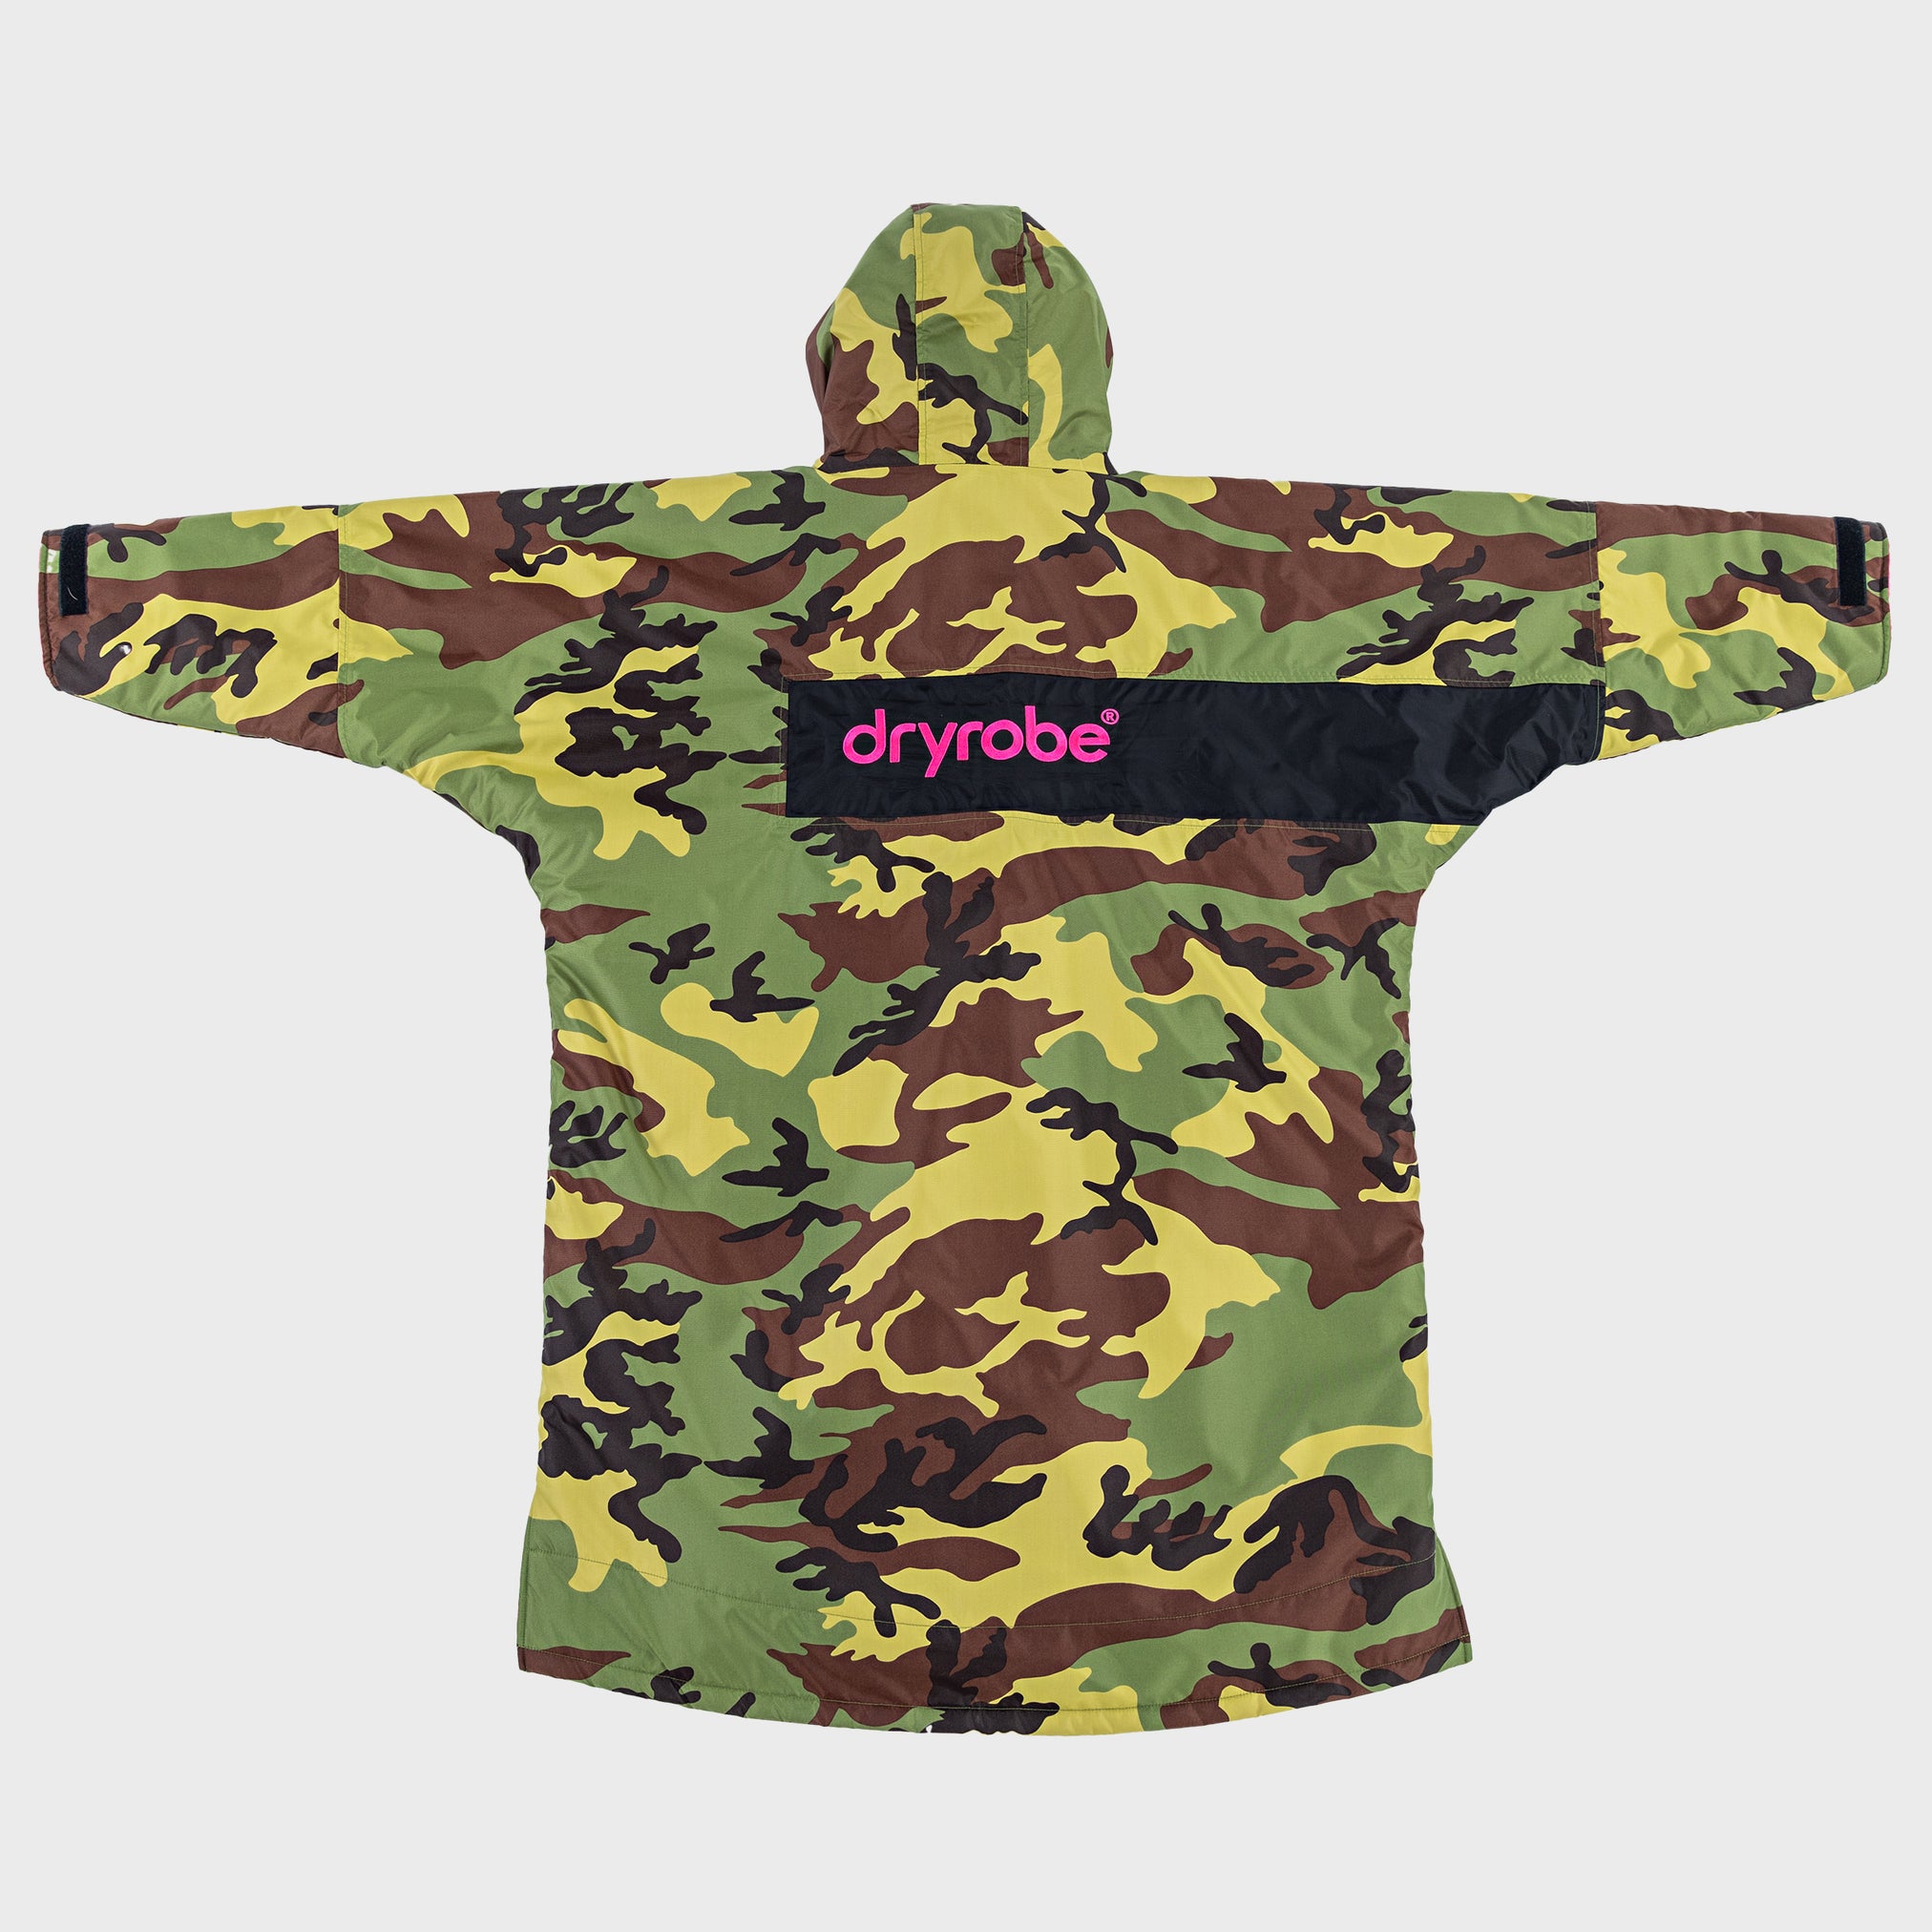  dryrobe advance kids change robe remix range Camo Pink Black